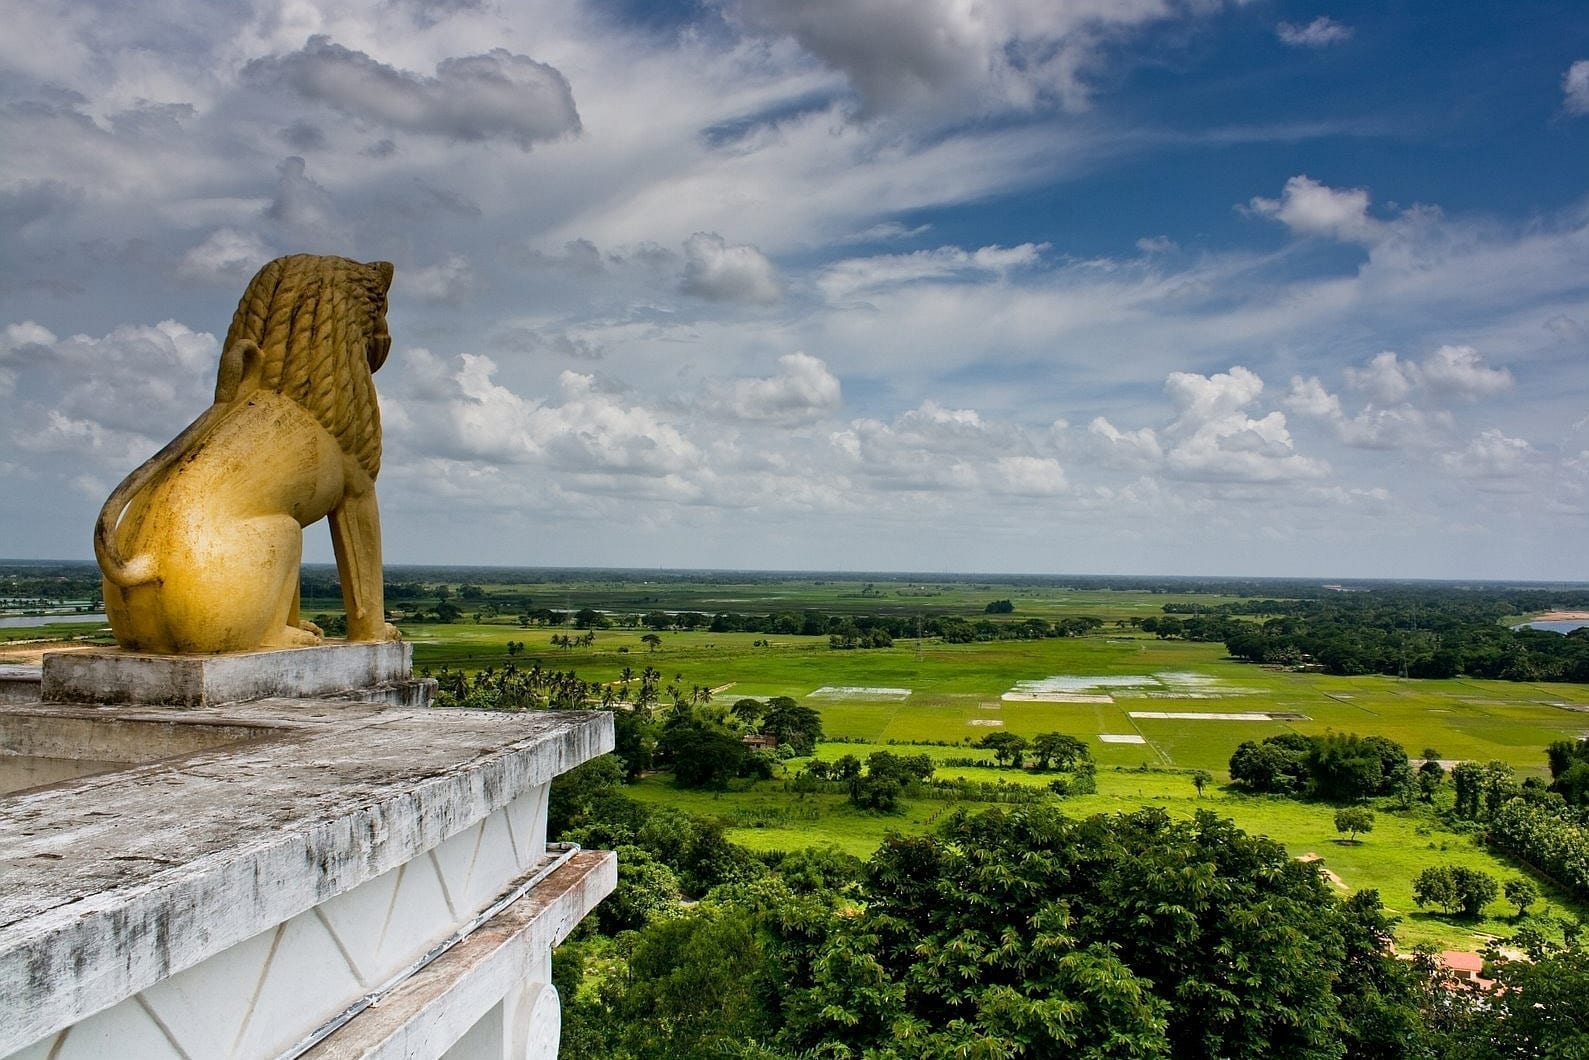 La estatua del león en Dhauligiri y el paisaje desde la cima de Dhauligiri Bhubaneswar India